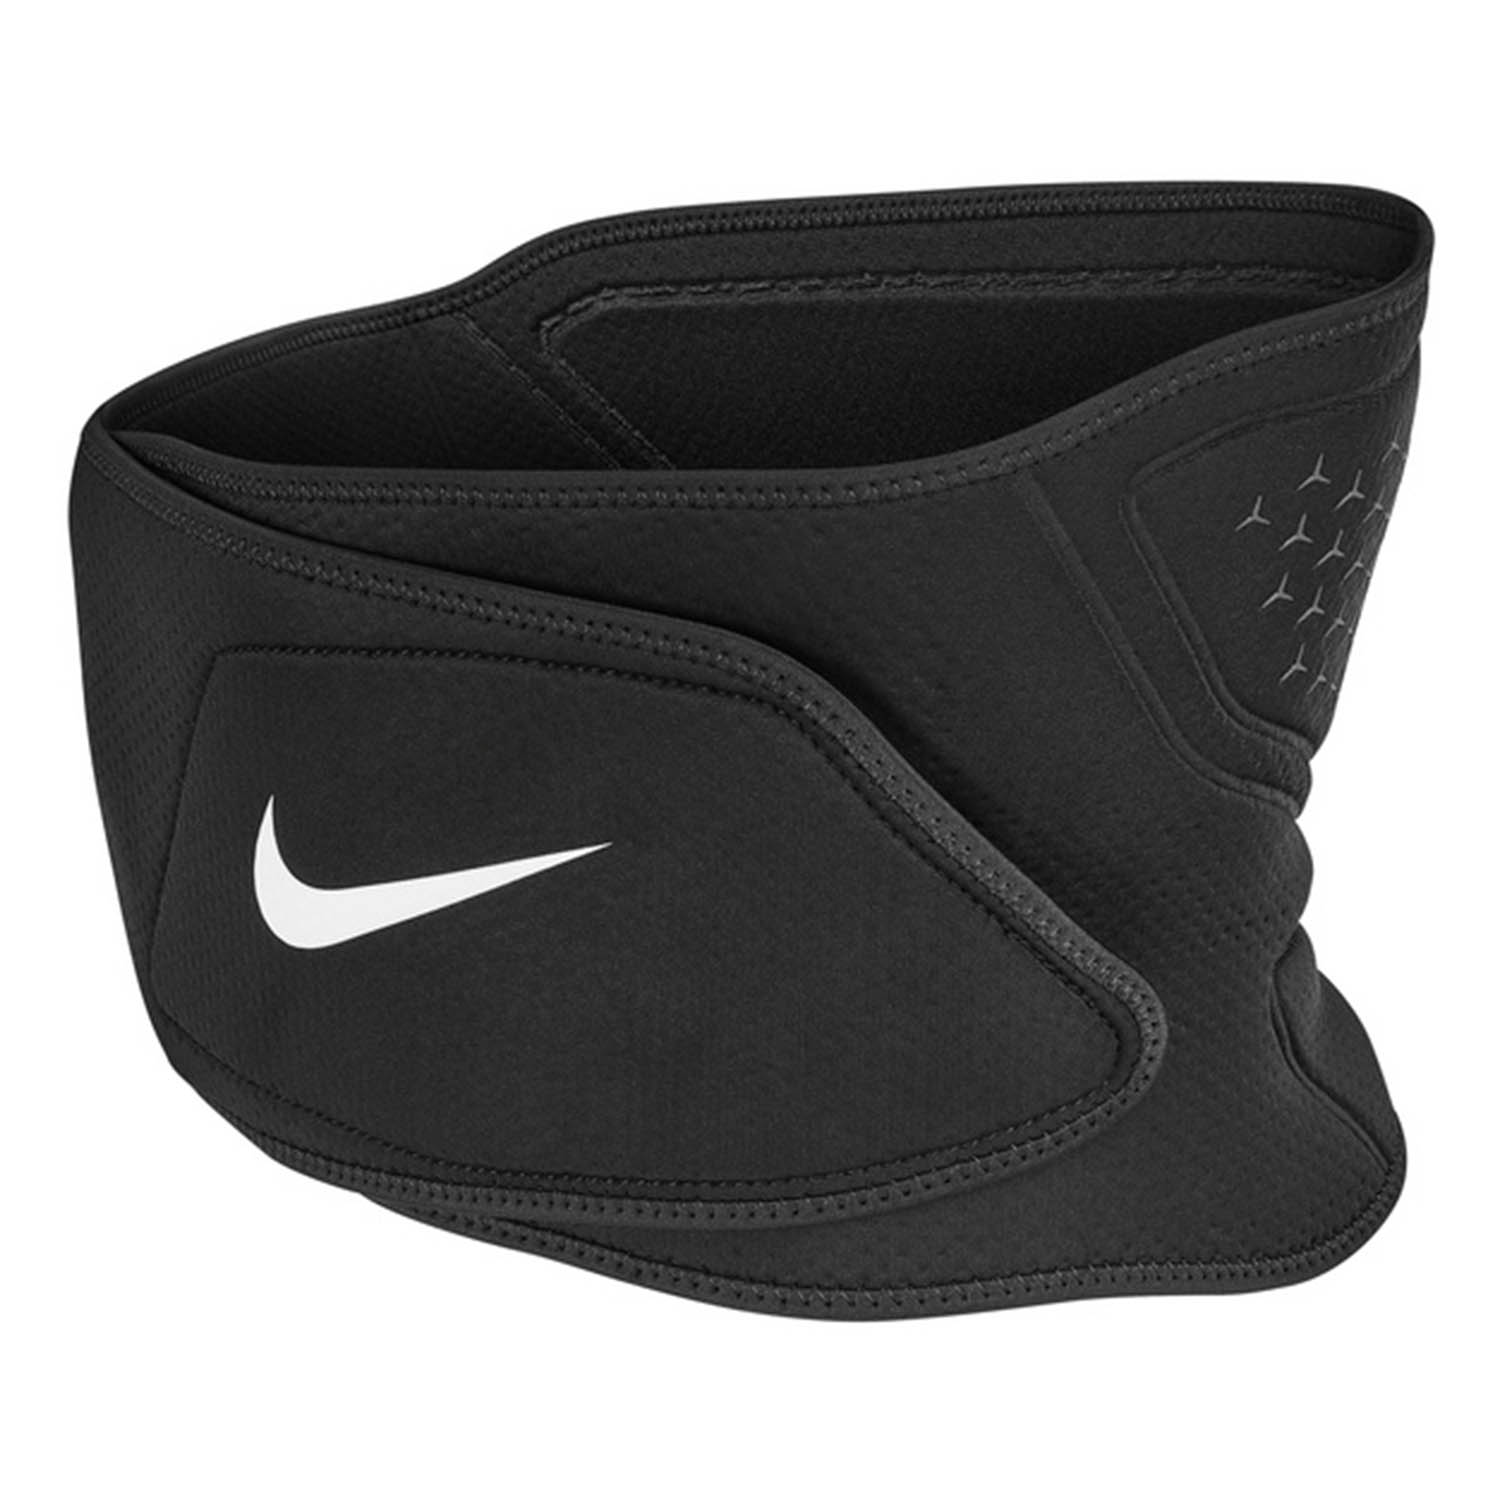 Nike Pro 3.0 Waist Wrap - Black/White